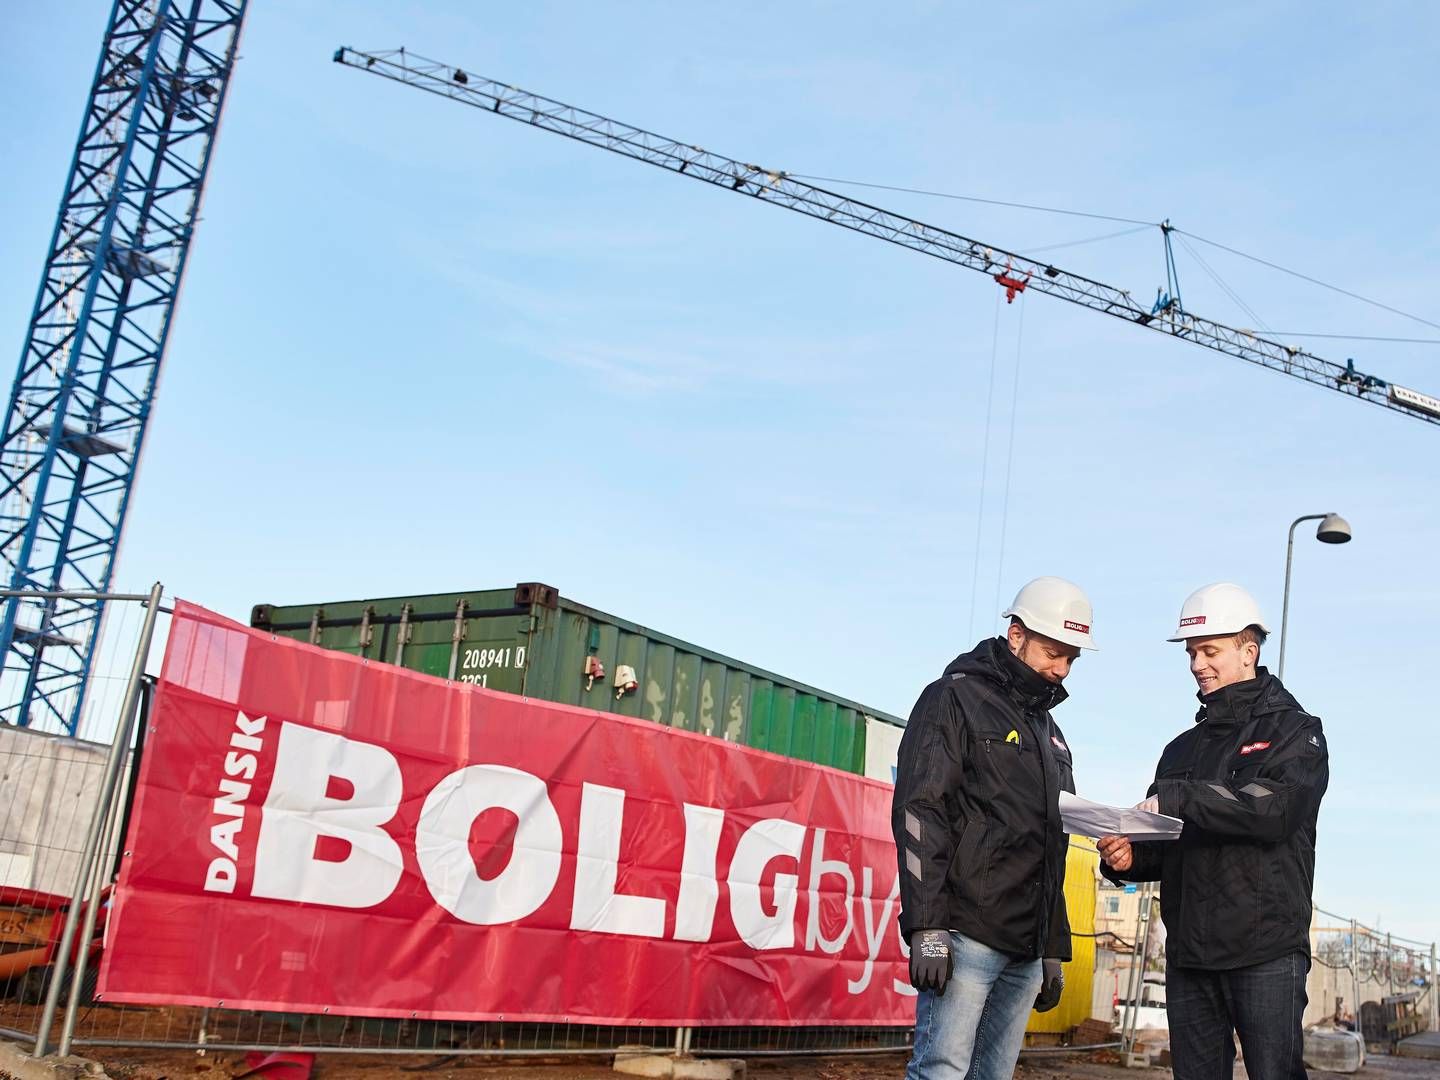 Dansk Boligbyg har været blandt landets største entreprenørvirksomheder med en omsætning på omkring 1,5 mia. kr. | Foto: PR